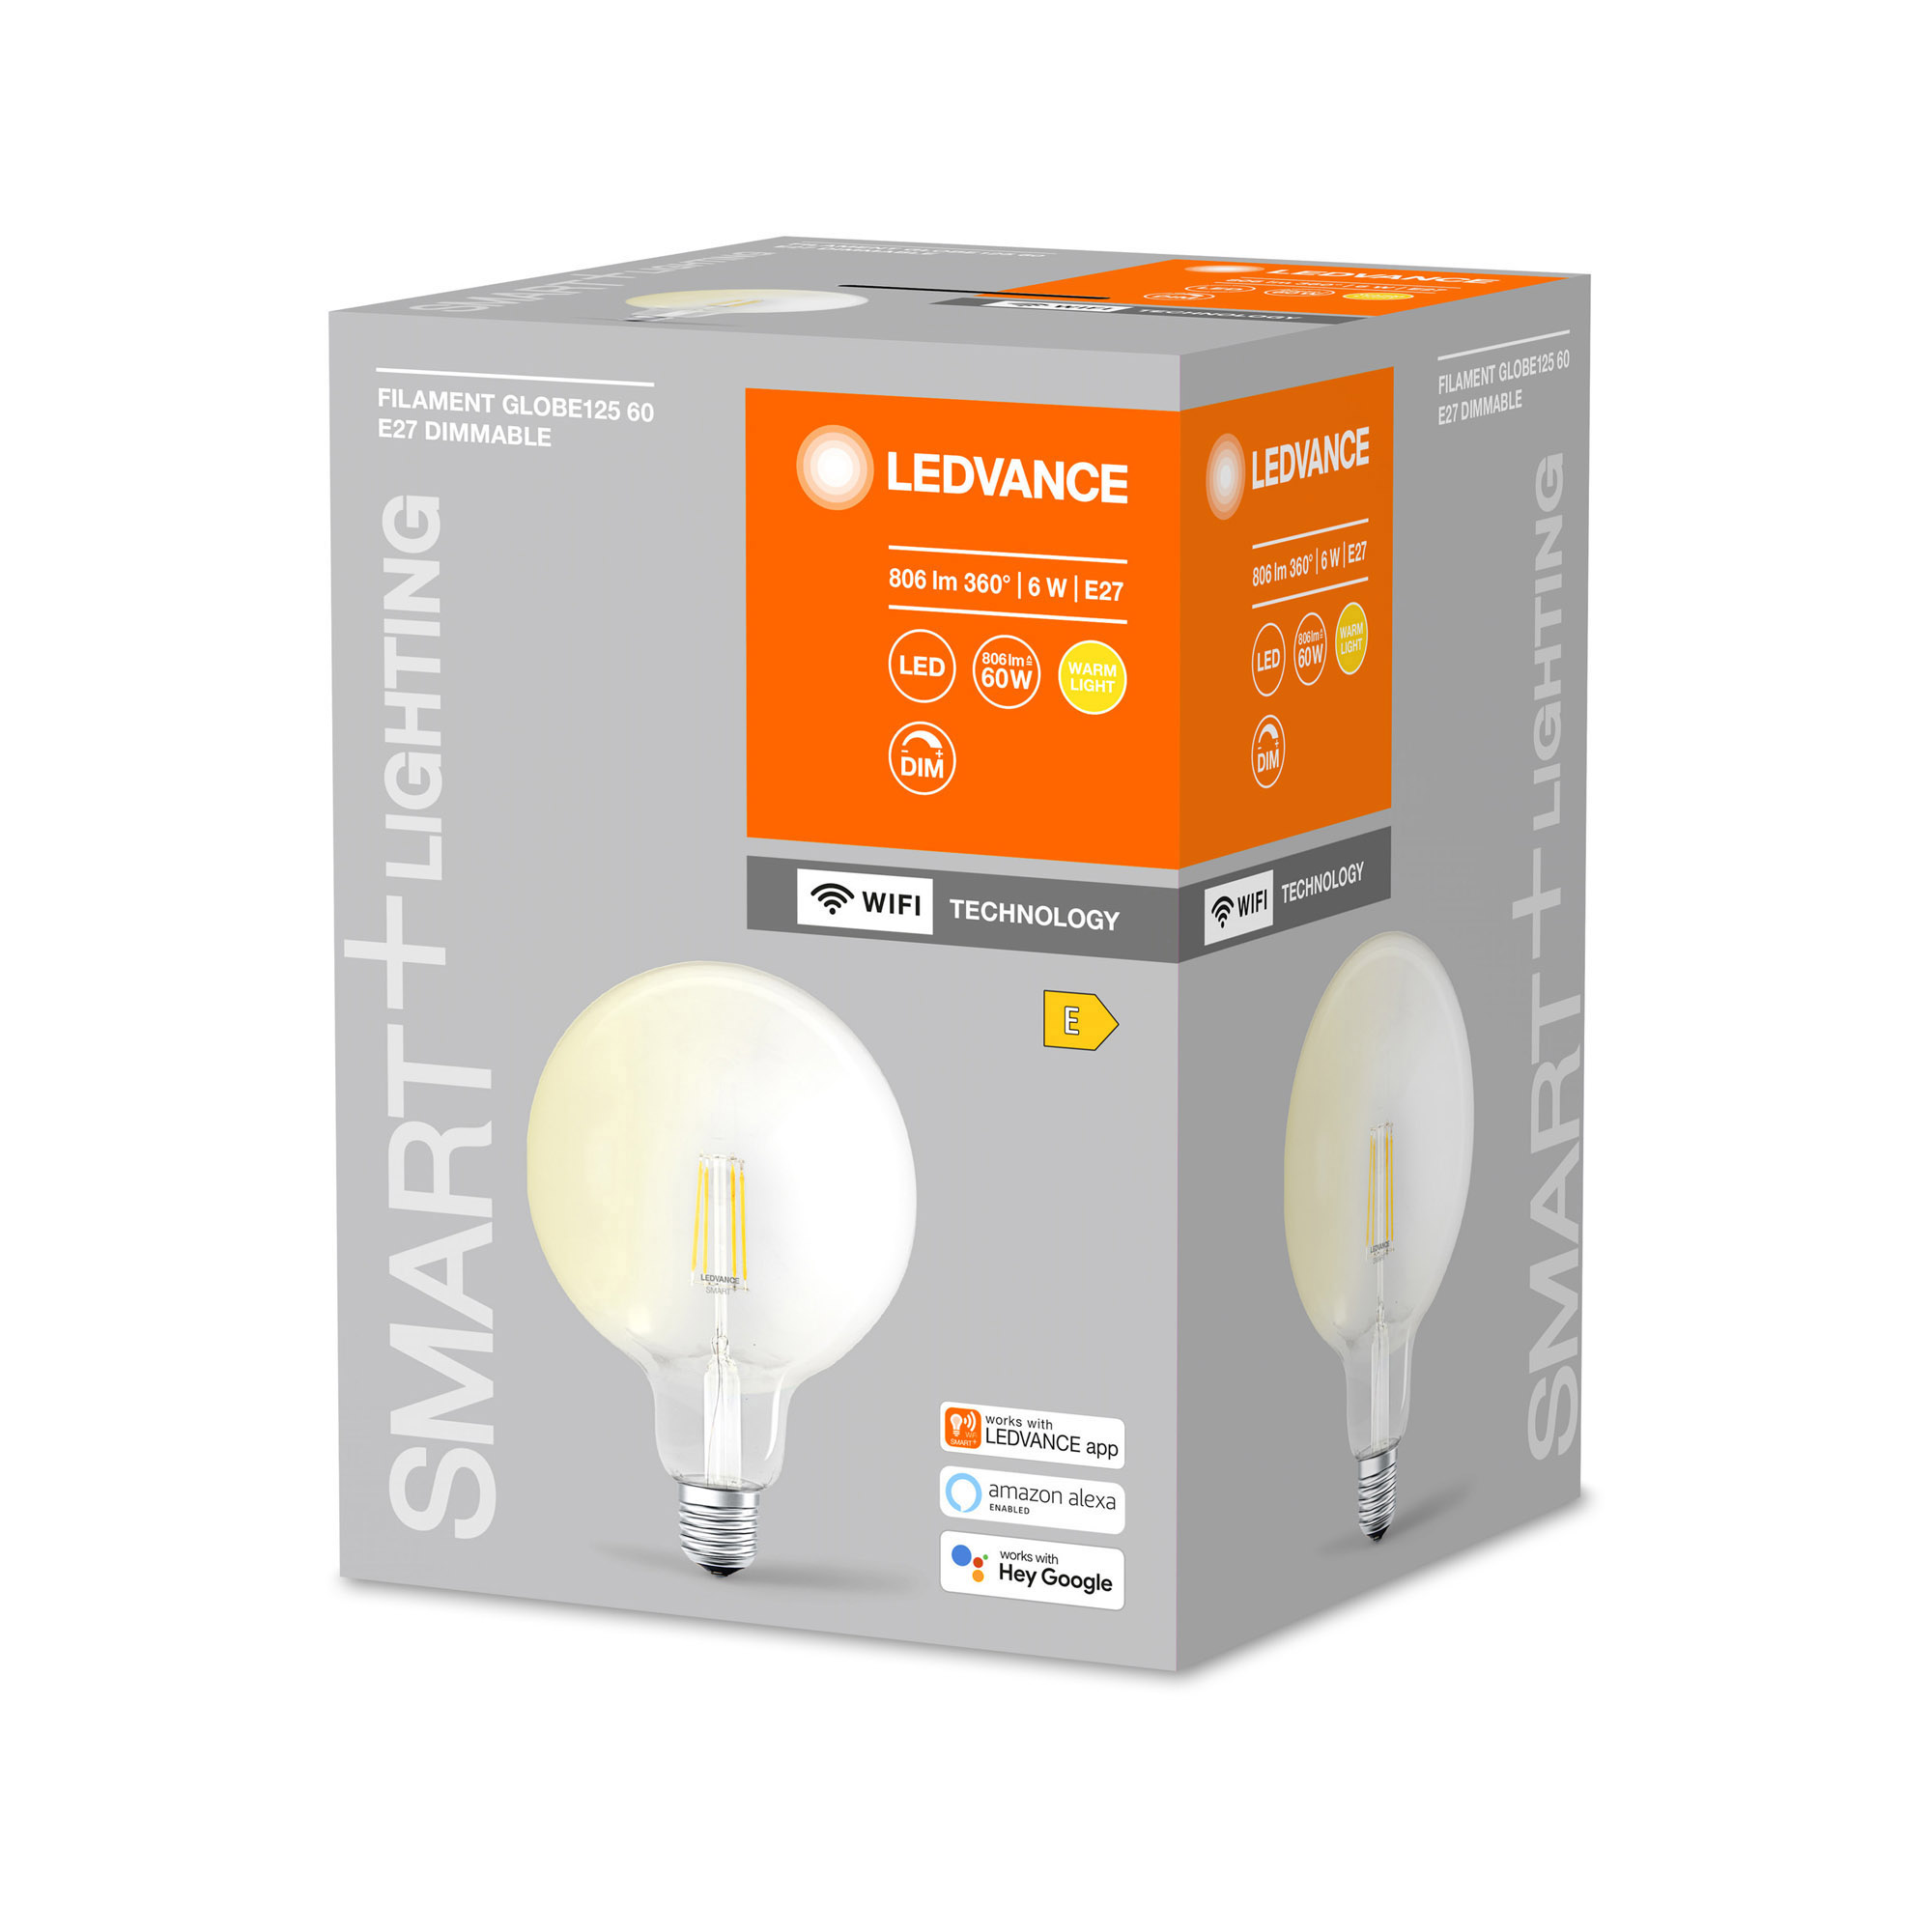 Bec LED LEDVANCE SMART+ WiFi Filament Bec LED LEDVANCE SMART+ WiFi Globe125 60 5.5W E27 DIM 2700K 806lm